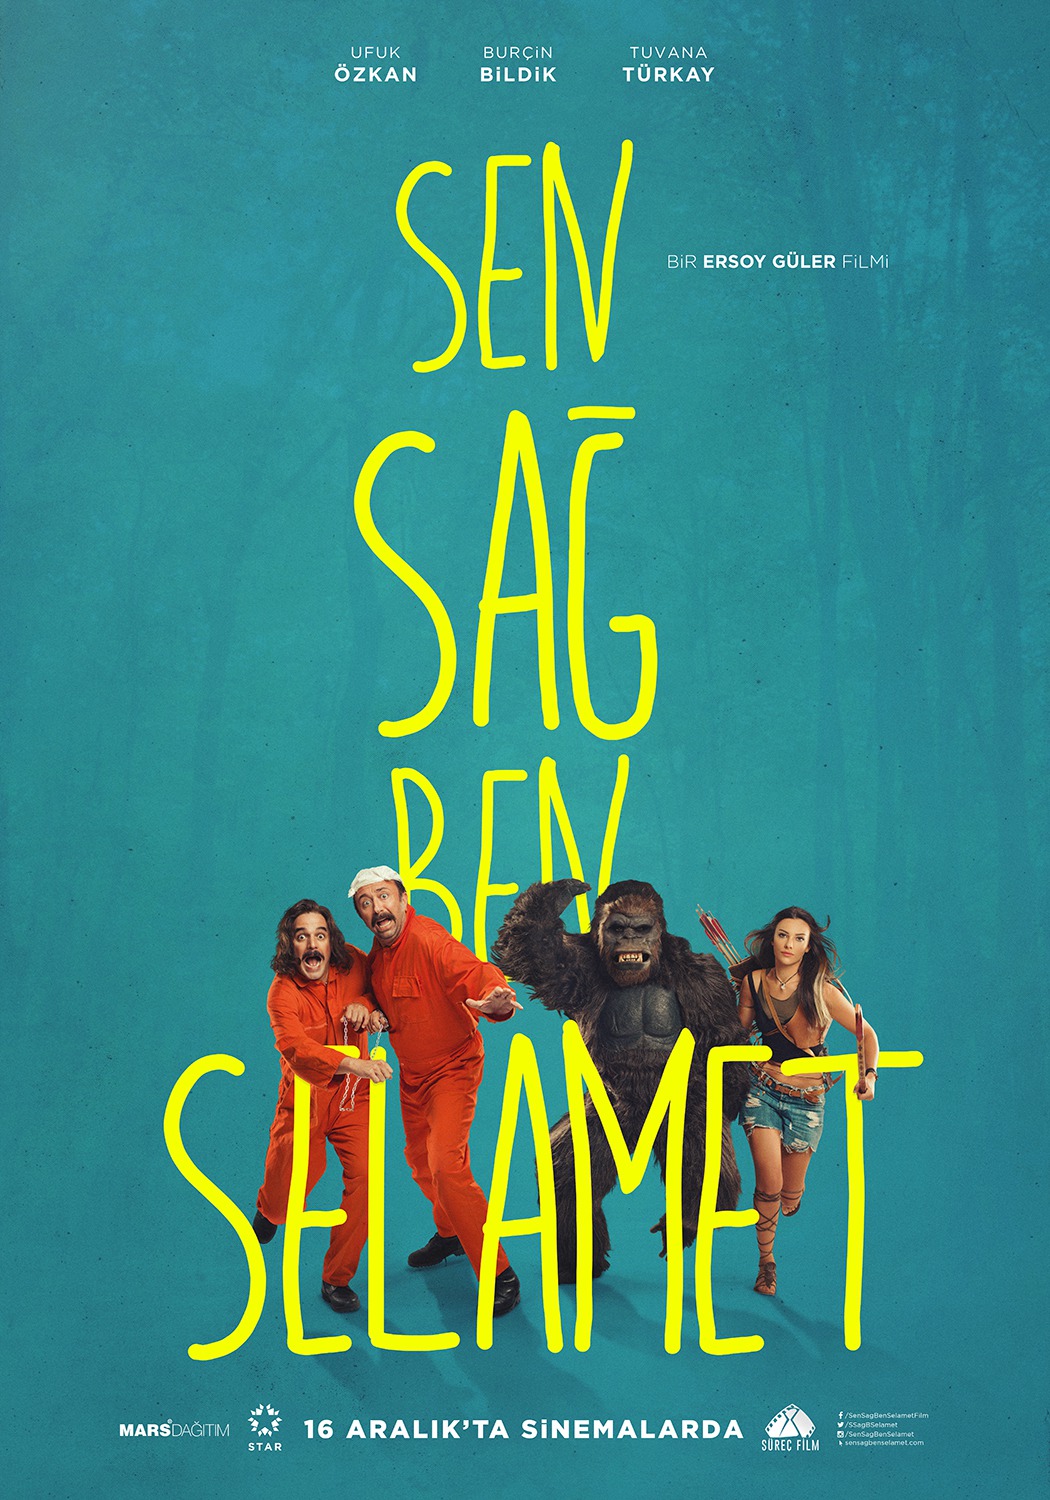 Extra Large Movie Poster Image for Sen Sag Ben Selamet (#1 of 4)